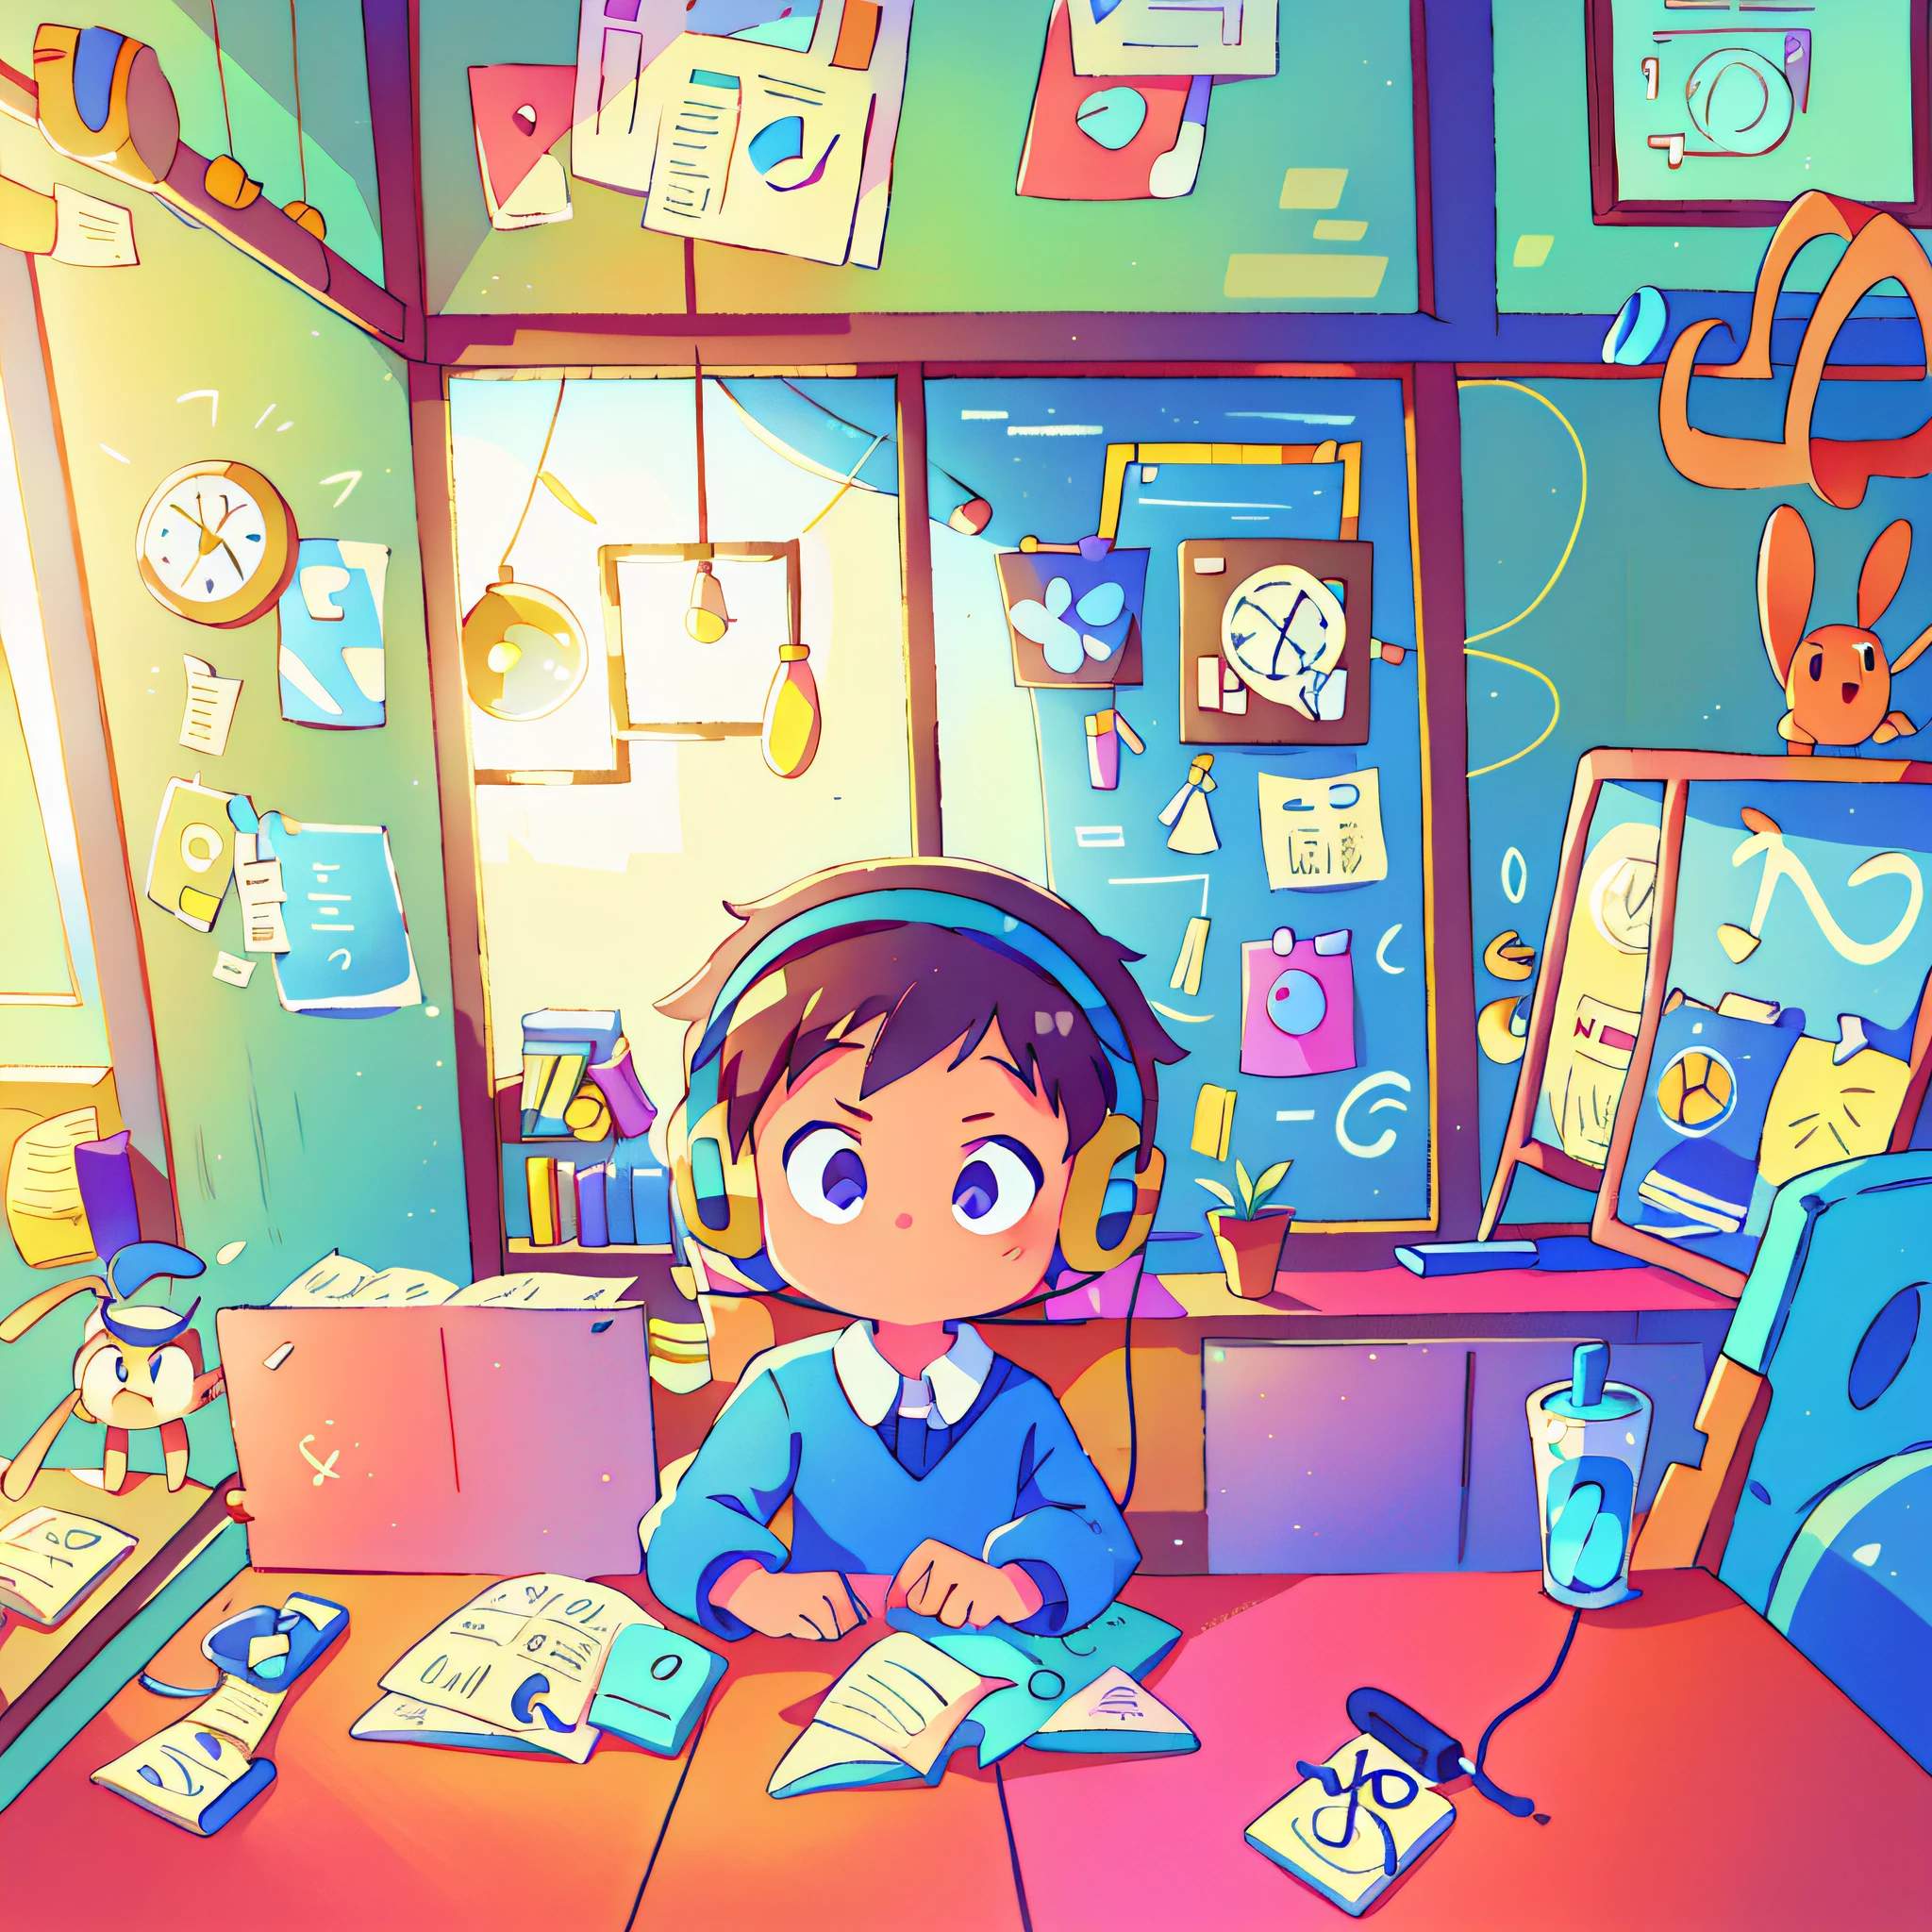 Un niño pequeño está frente a la cámara frente al escritorio estudiando felizmente con auriculares, foto frontal, una ventana del piso al techo detrás de él, combinación de colores de alta calidad, ilustración plana para niños, 16k, alta calidad